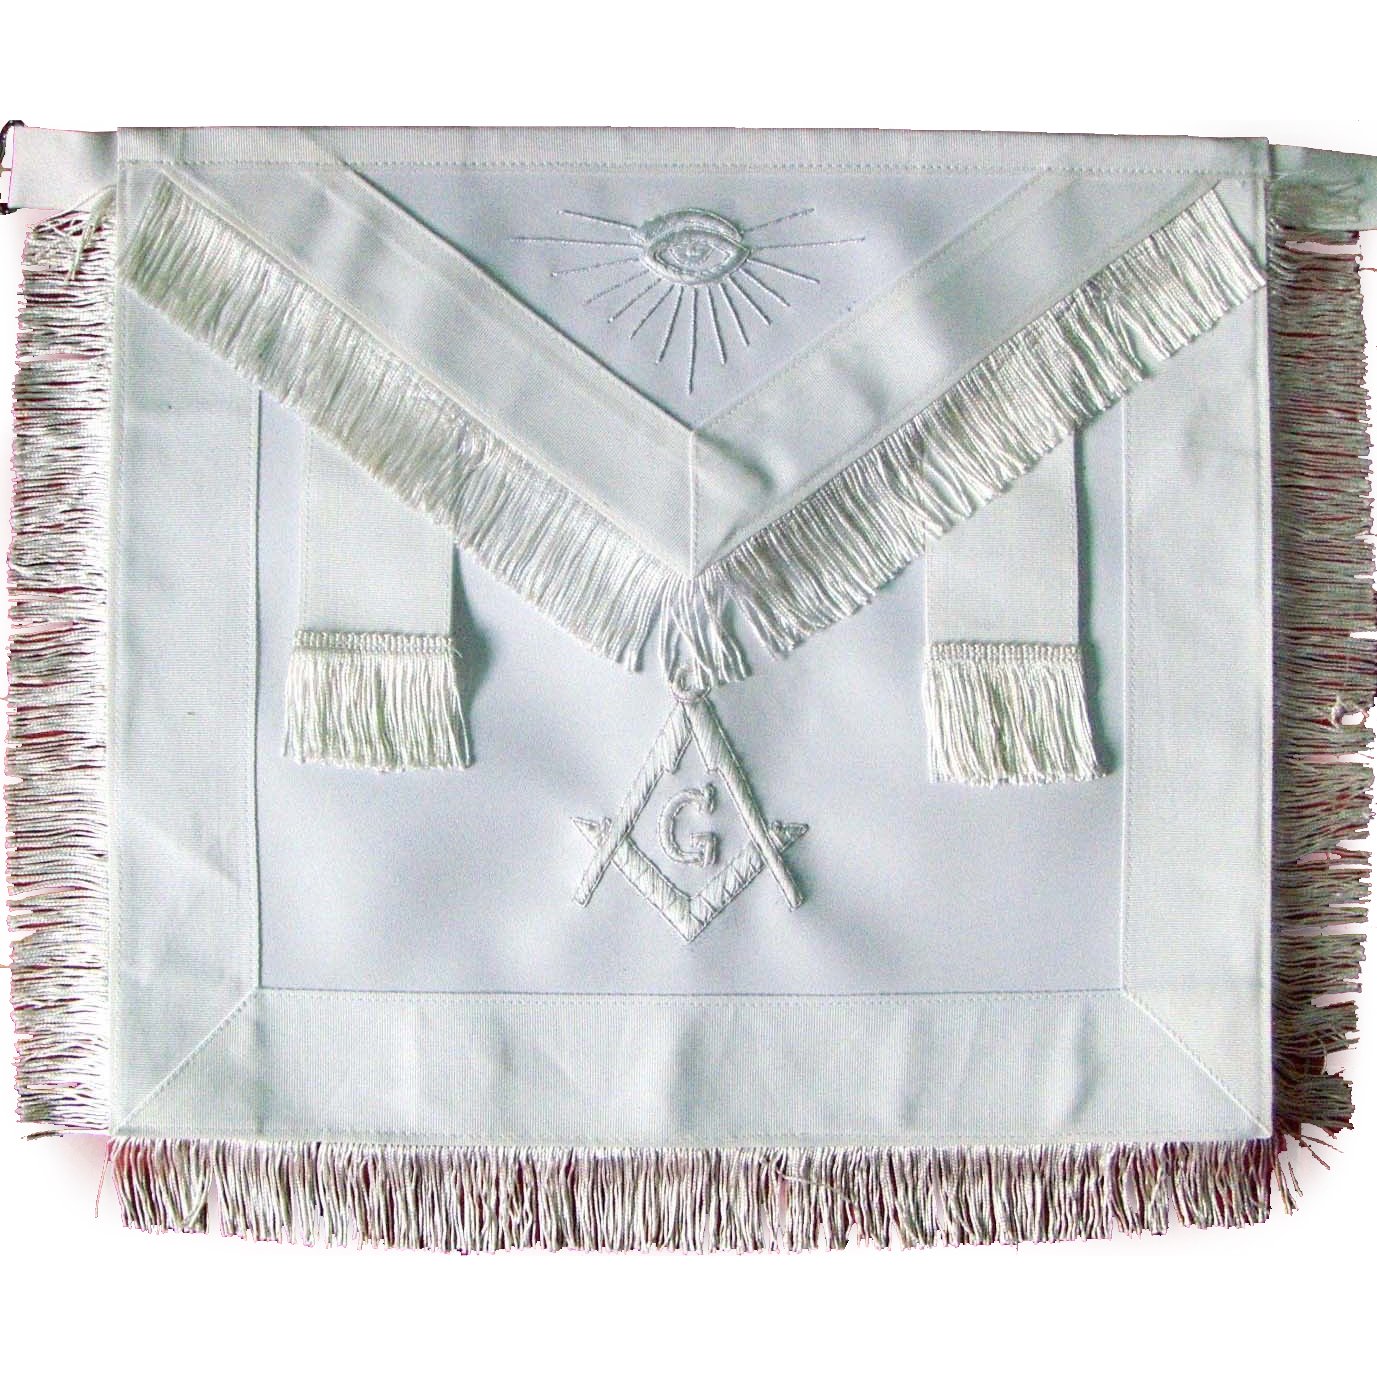 Master Mason Blue Lodge Apron - All White Ribbon with White Fringe - Bricks Masons